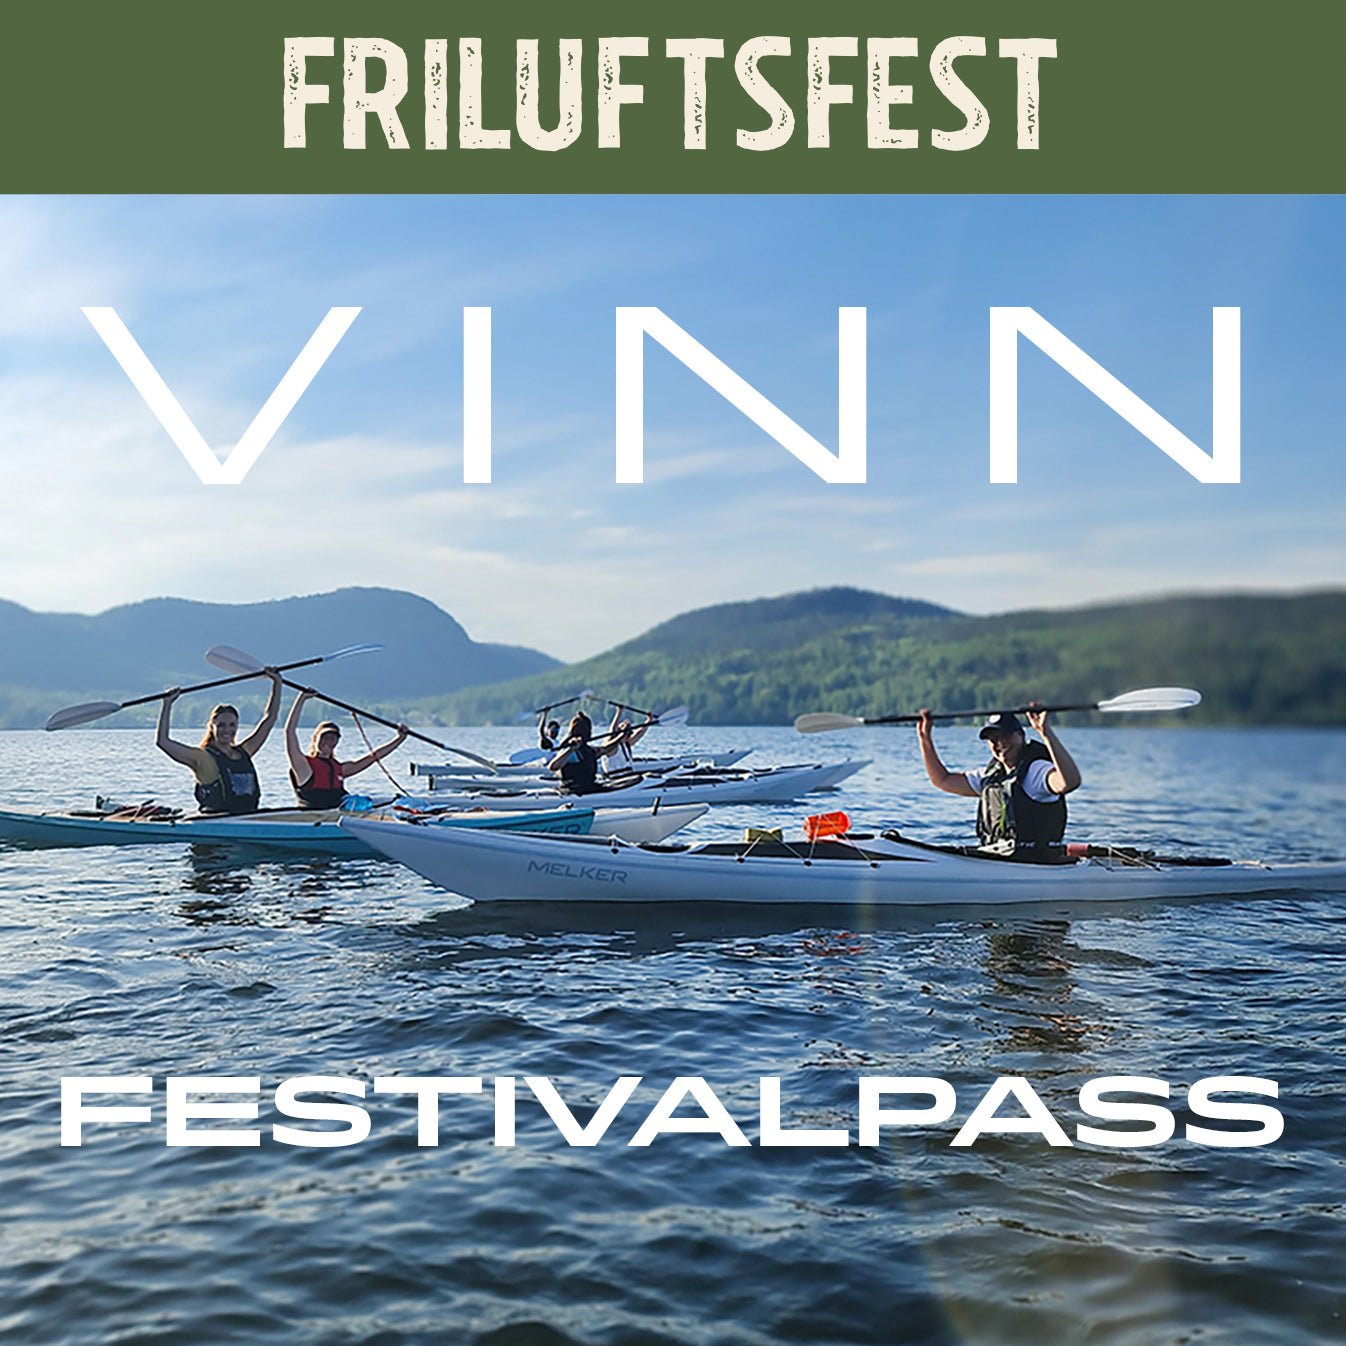 Vinn Festivalpass till Friluftsfest!